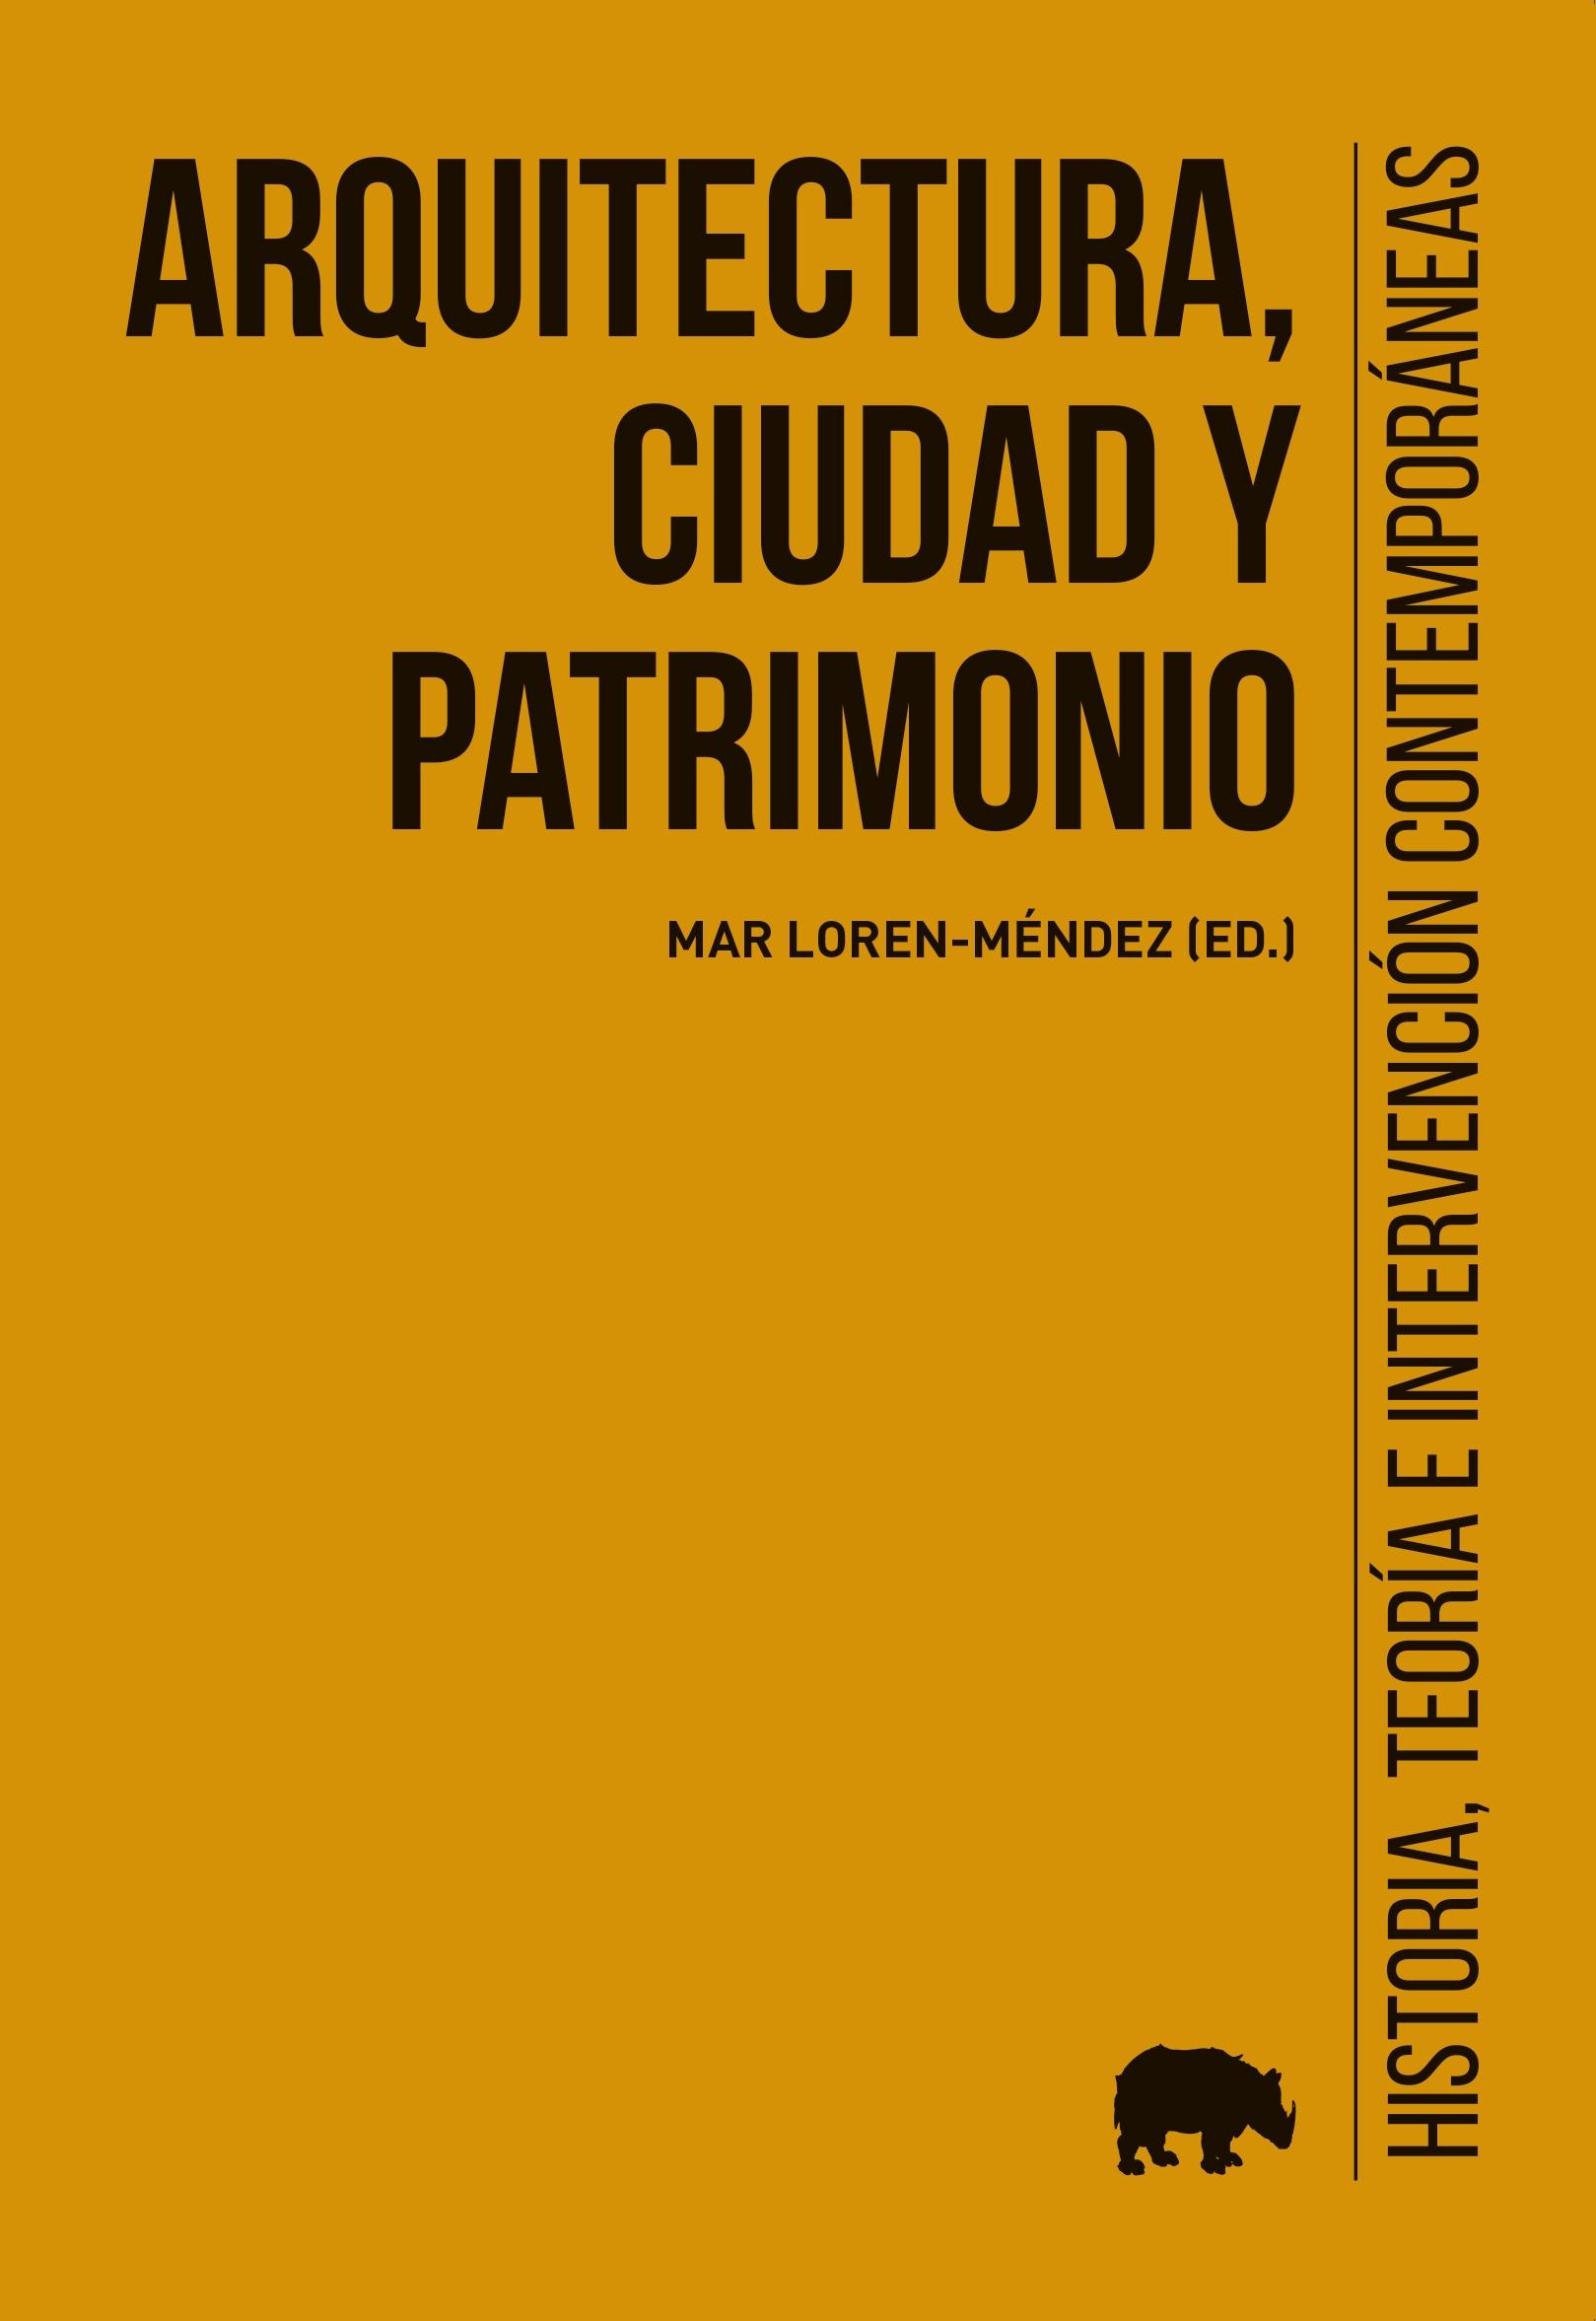 ARQUITECTURA, CIUDAD Y PATRIMONIO "HISTORIA, TEORÍA E INTERVENCION CONTEMPORANEAS". 